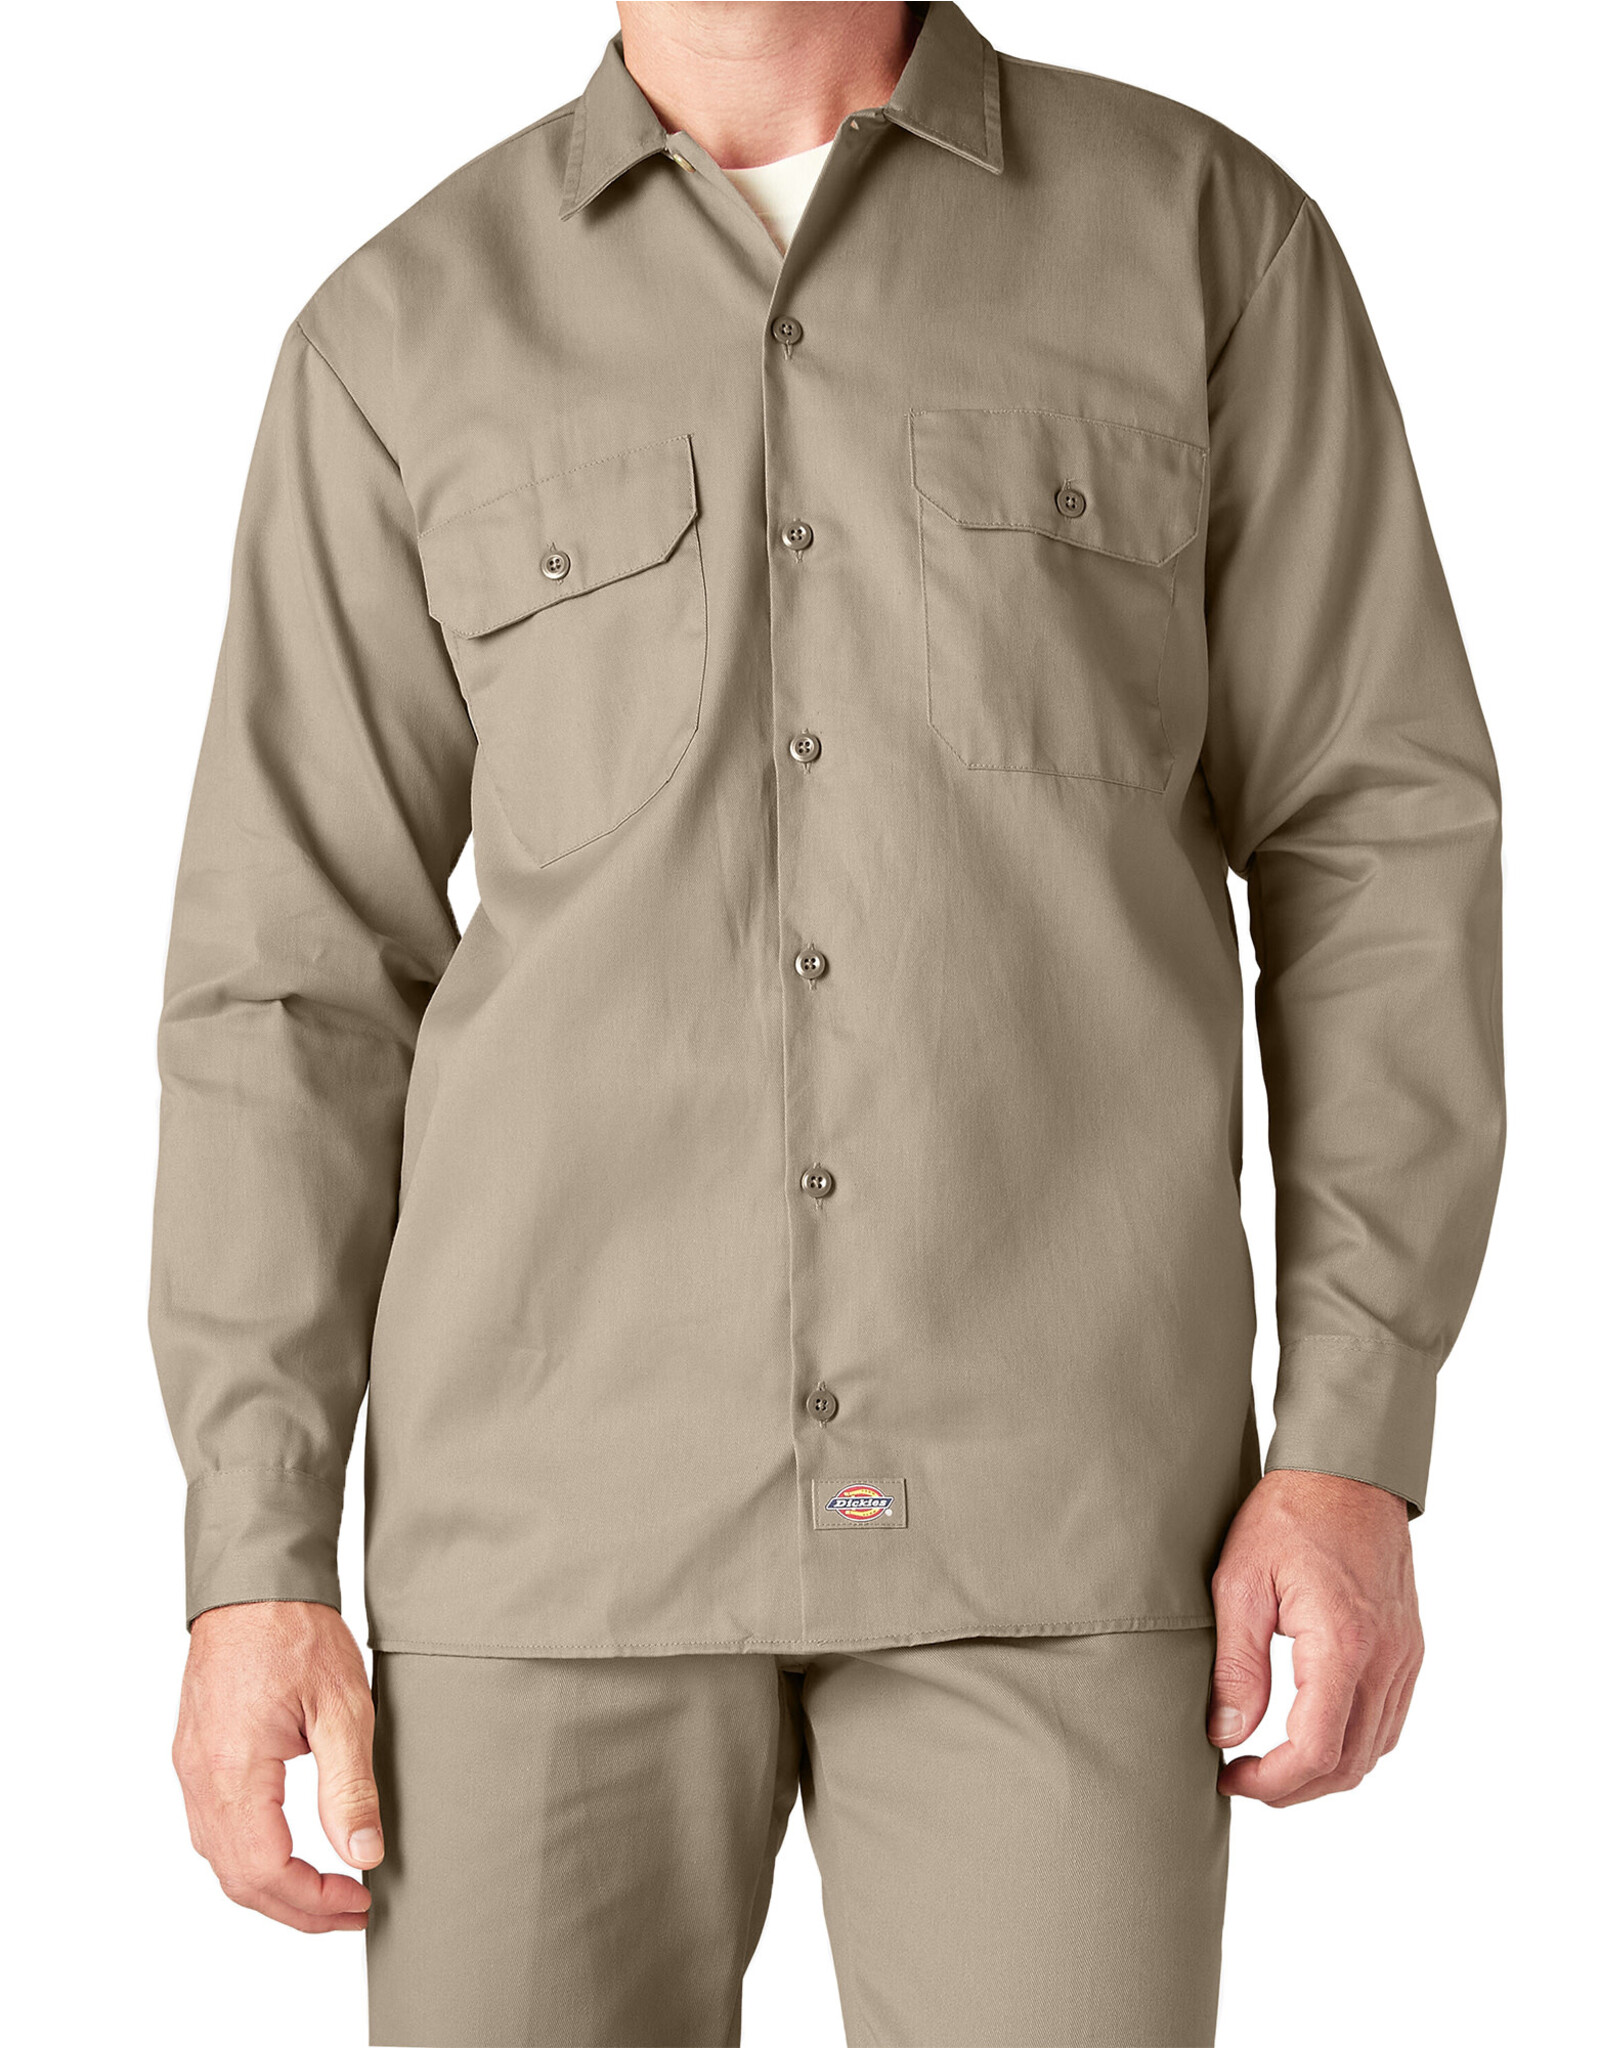 DICKIES Long Sleeve Work Shirt Desert Sand Original Fit - 574DS